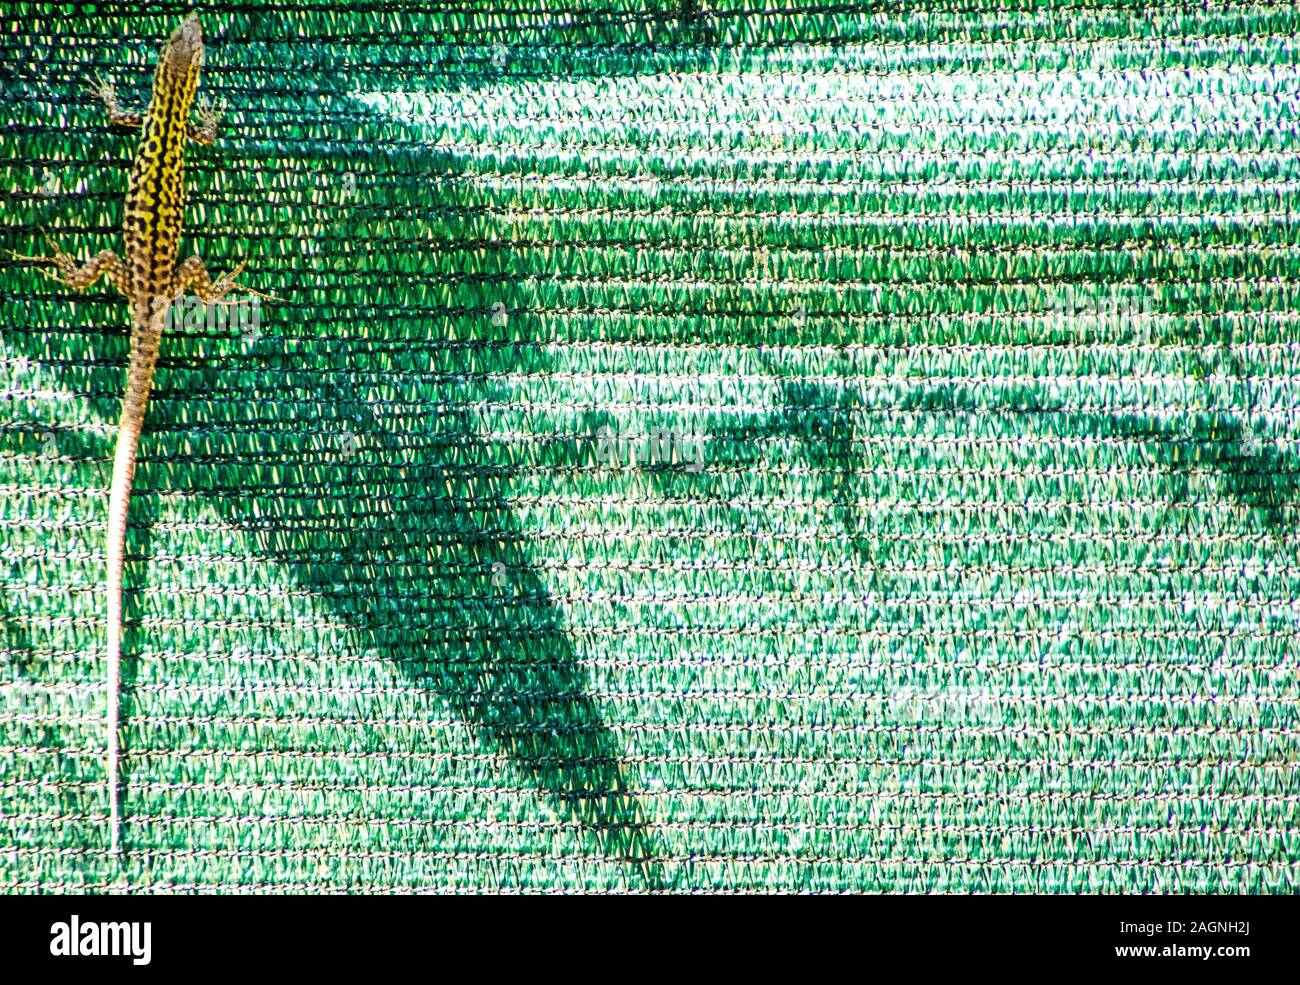 Eine gemeinsame Eidechse im Garten von Italien gesehen. Stockfoto